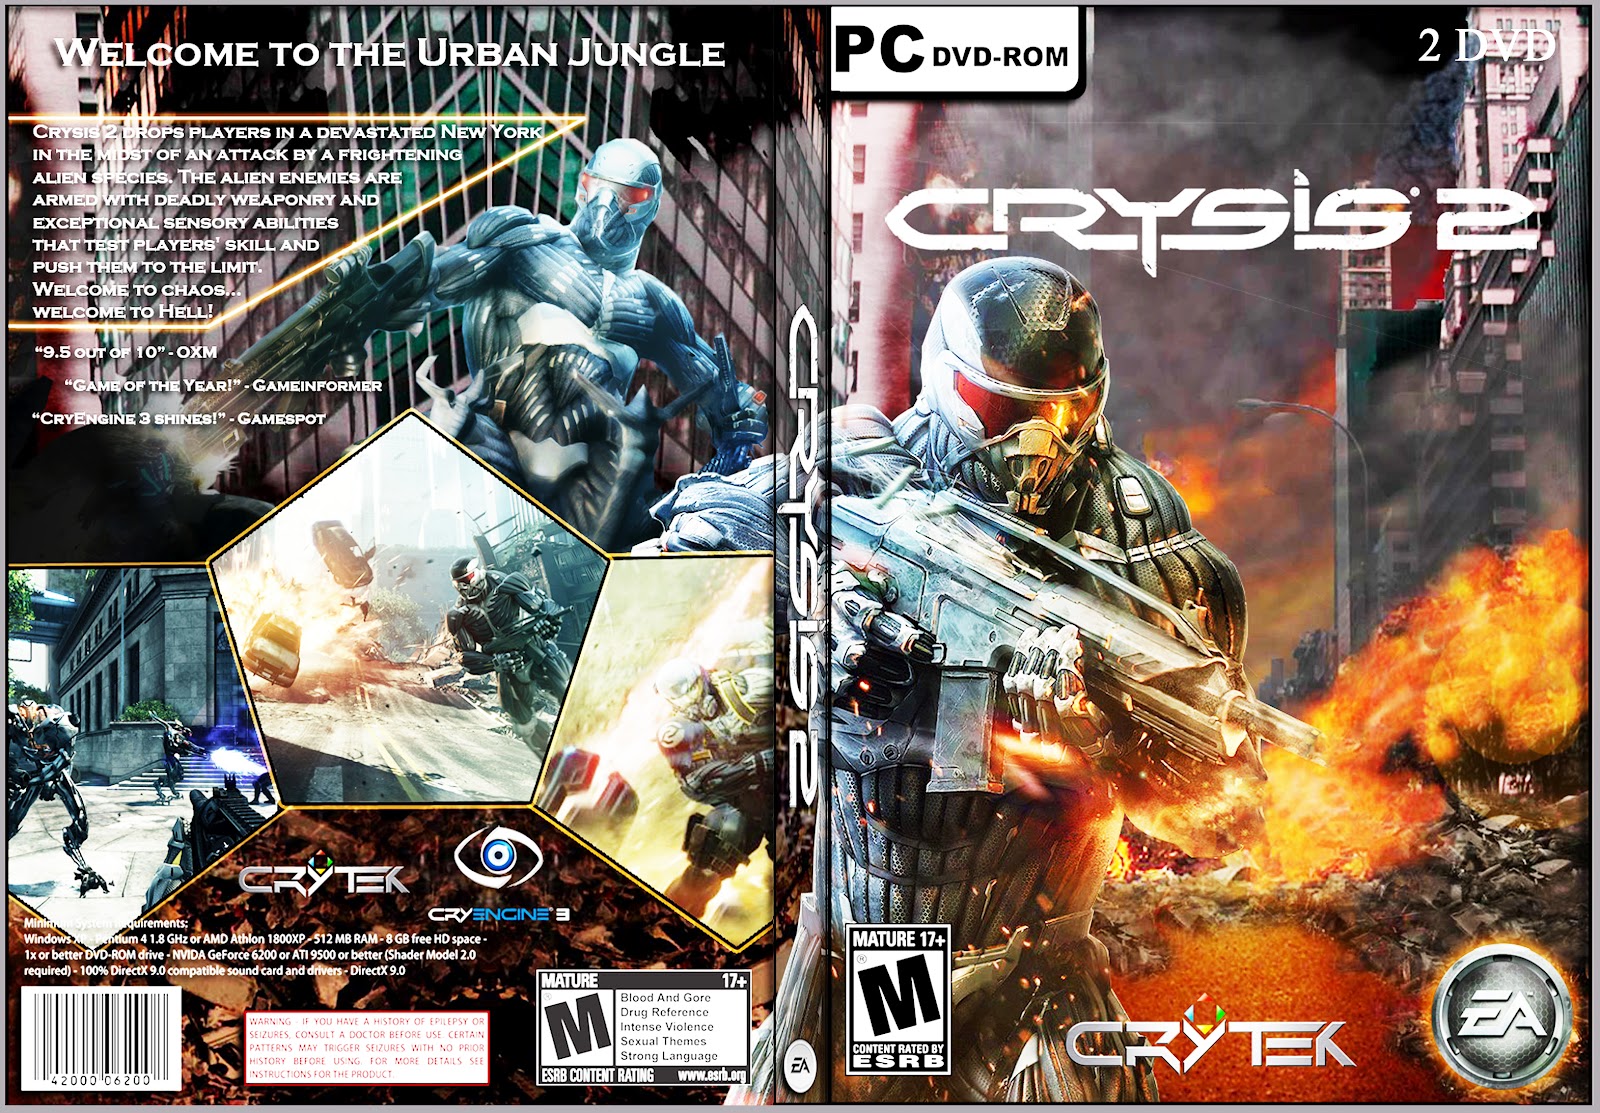 Игры сто 2. Крайзис 2 диск. Лицензионный диск крайзис 2. Crysis 2 Xbox 360 диск CD. Ps3 Crysis 2 русская версия диск.